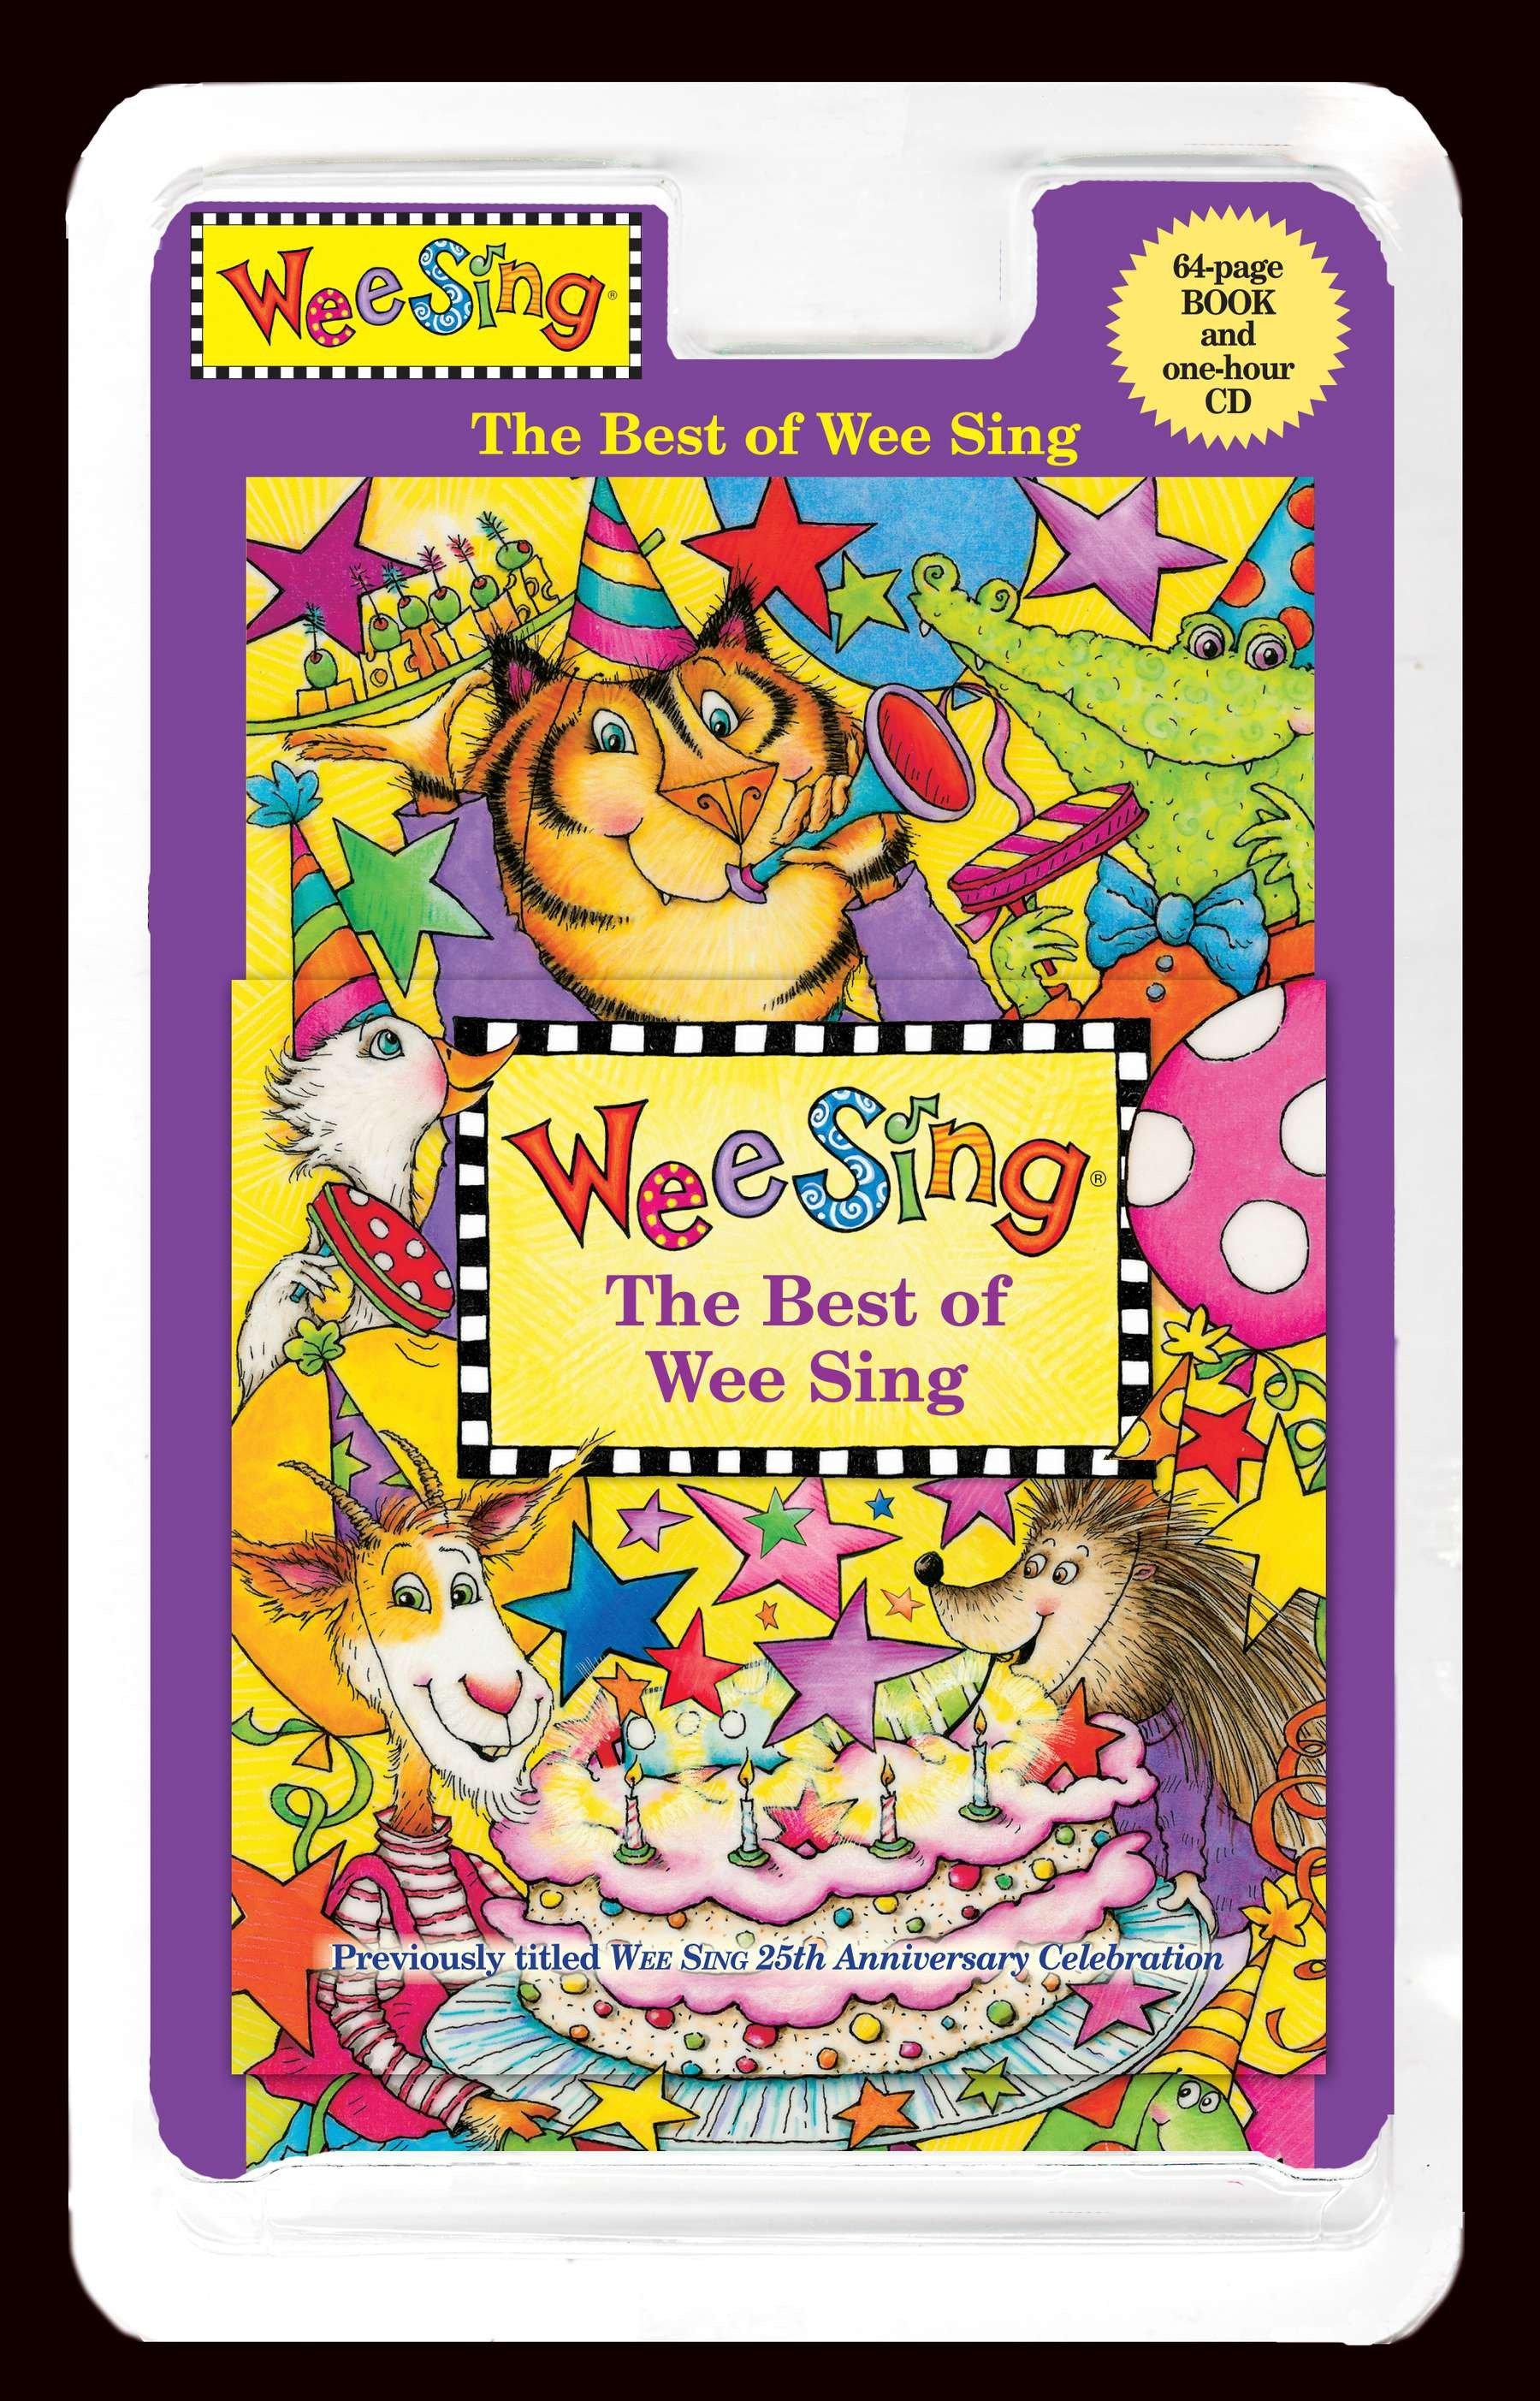 The Best of Wee Sing. Book + CD / Pamela Conn Beall (u. a.) / Taschenbuch / 64 S. / Englisch / 2011 / Penguin LLC US / EAN 9780843121841 - Beall, Pamela Conn